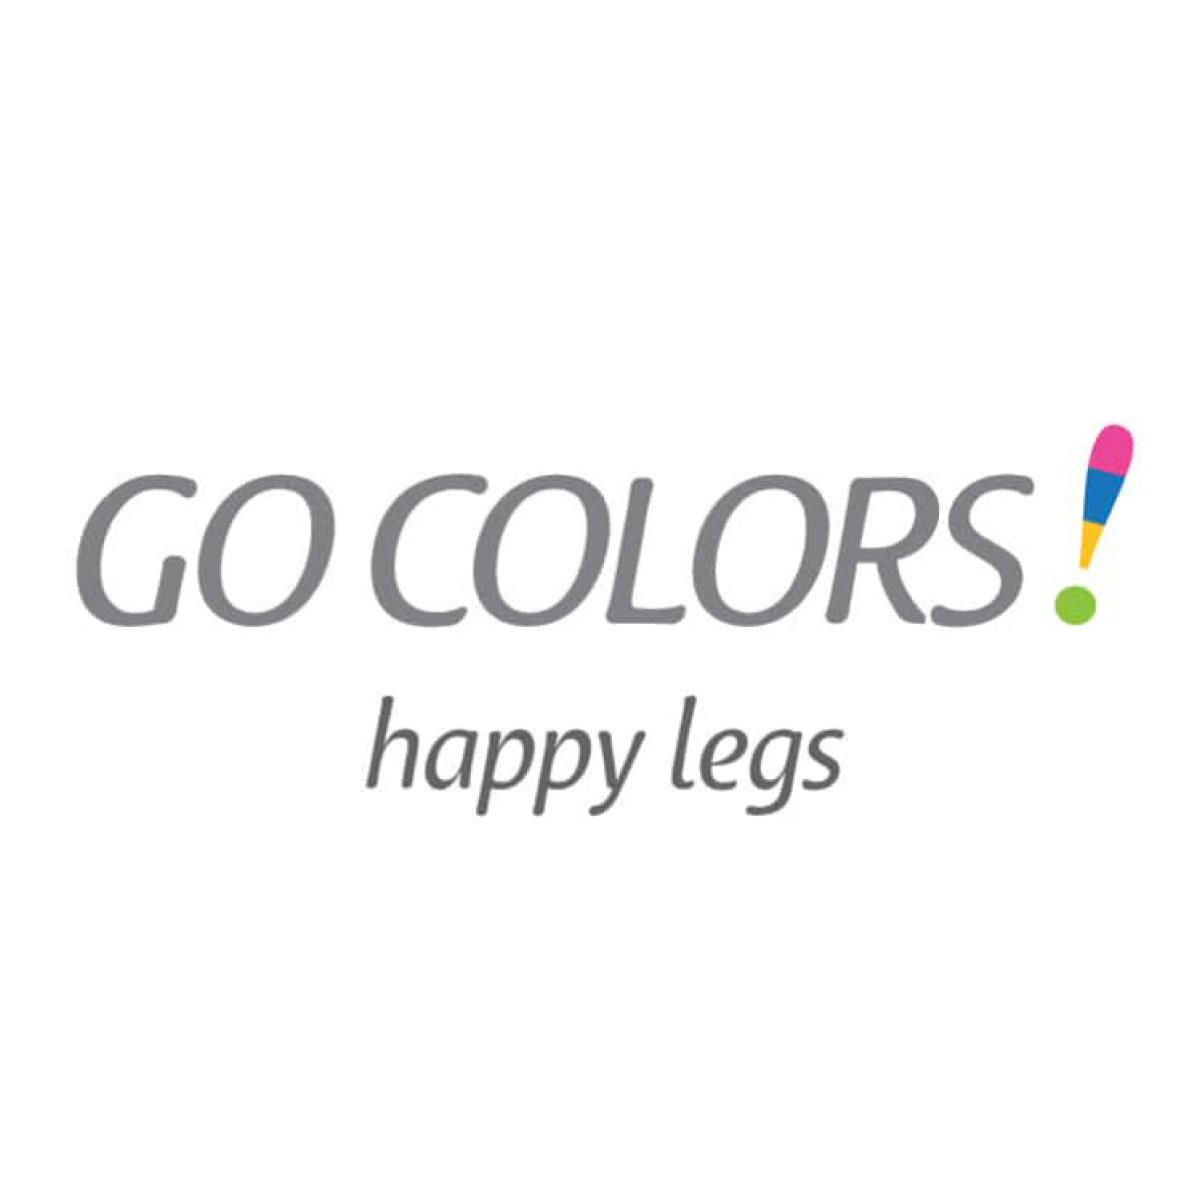 Go Colors, Galleria